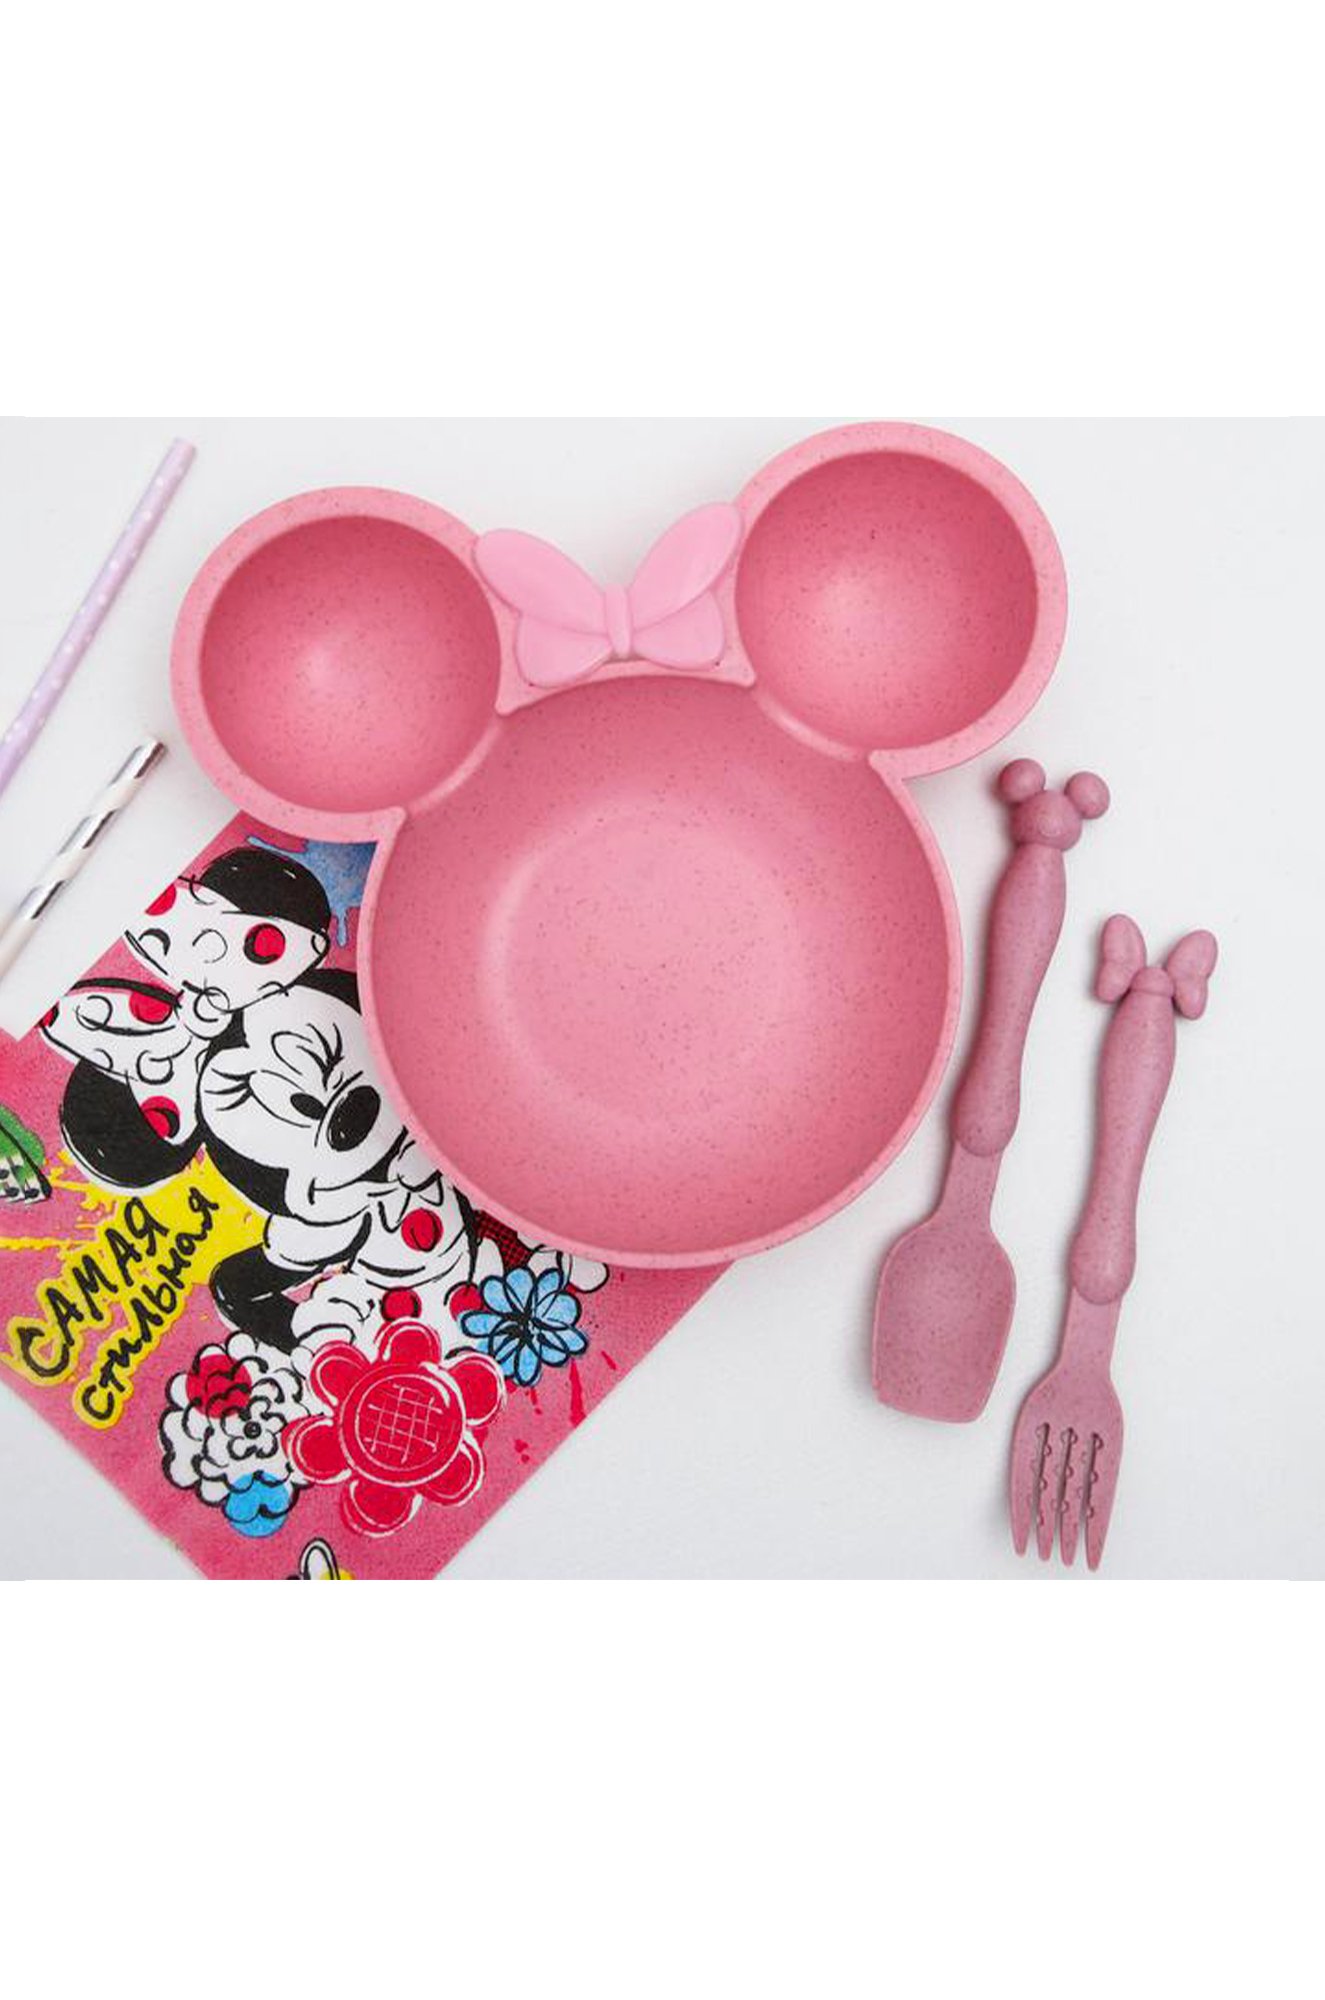 Набор детской посуды Disney